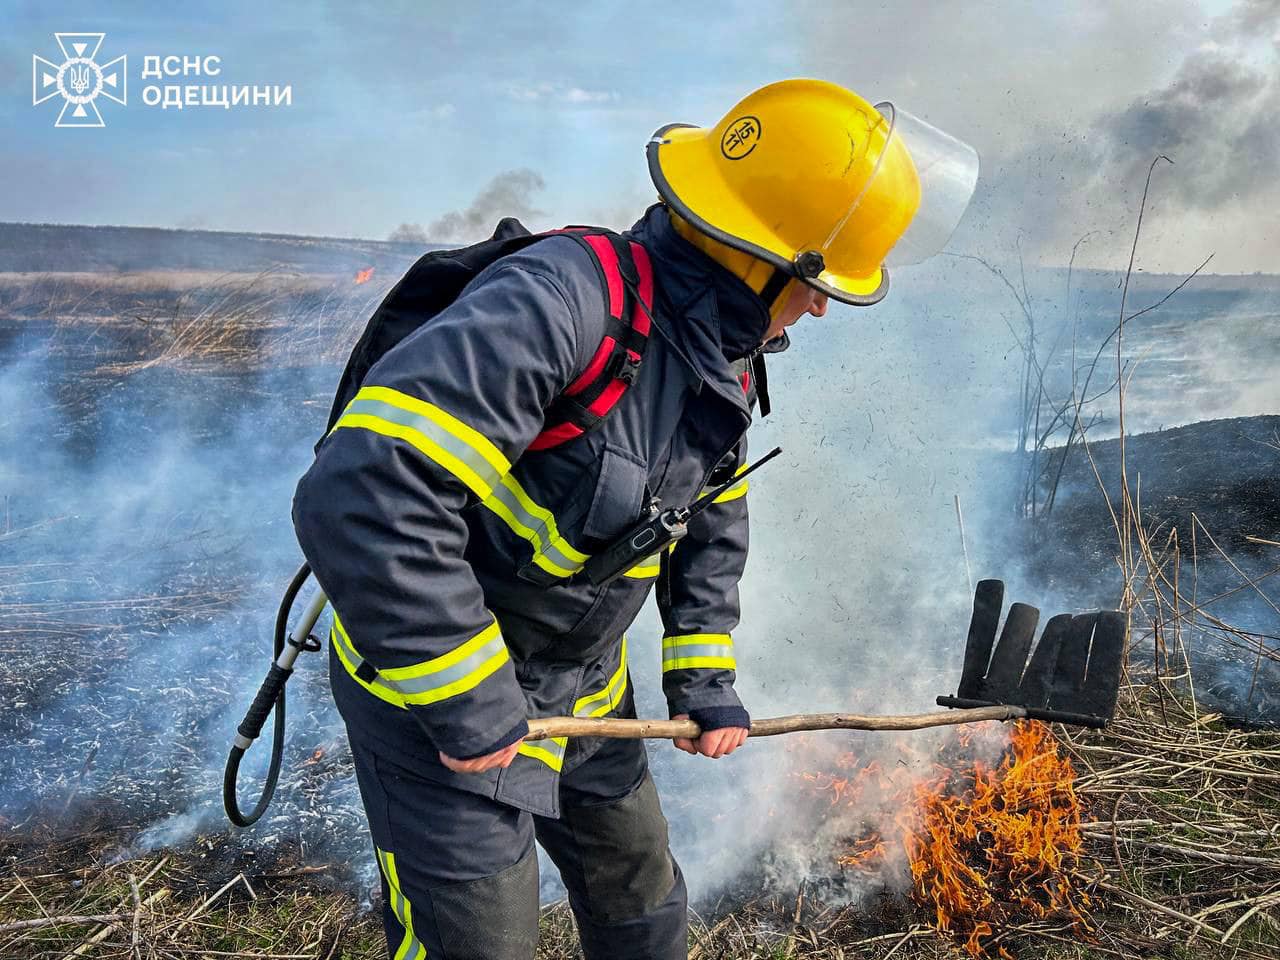 С начала месяца в Одесской области пожарами уничтожено более 60 гектаров земли